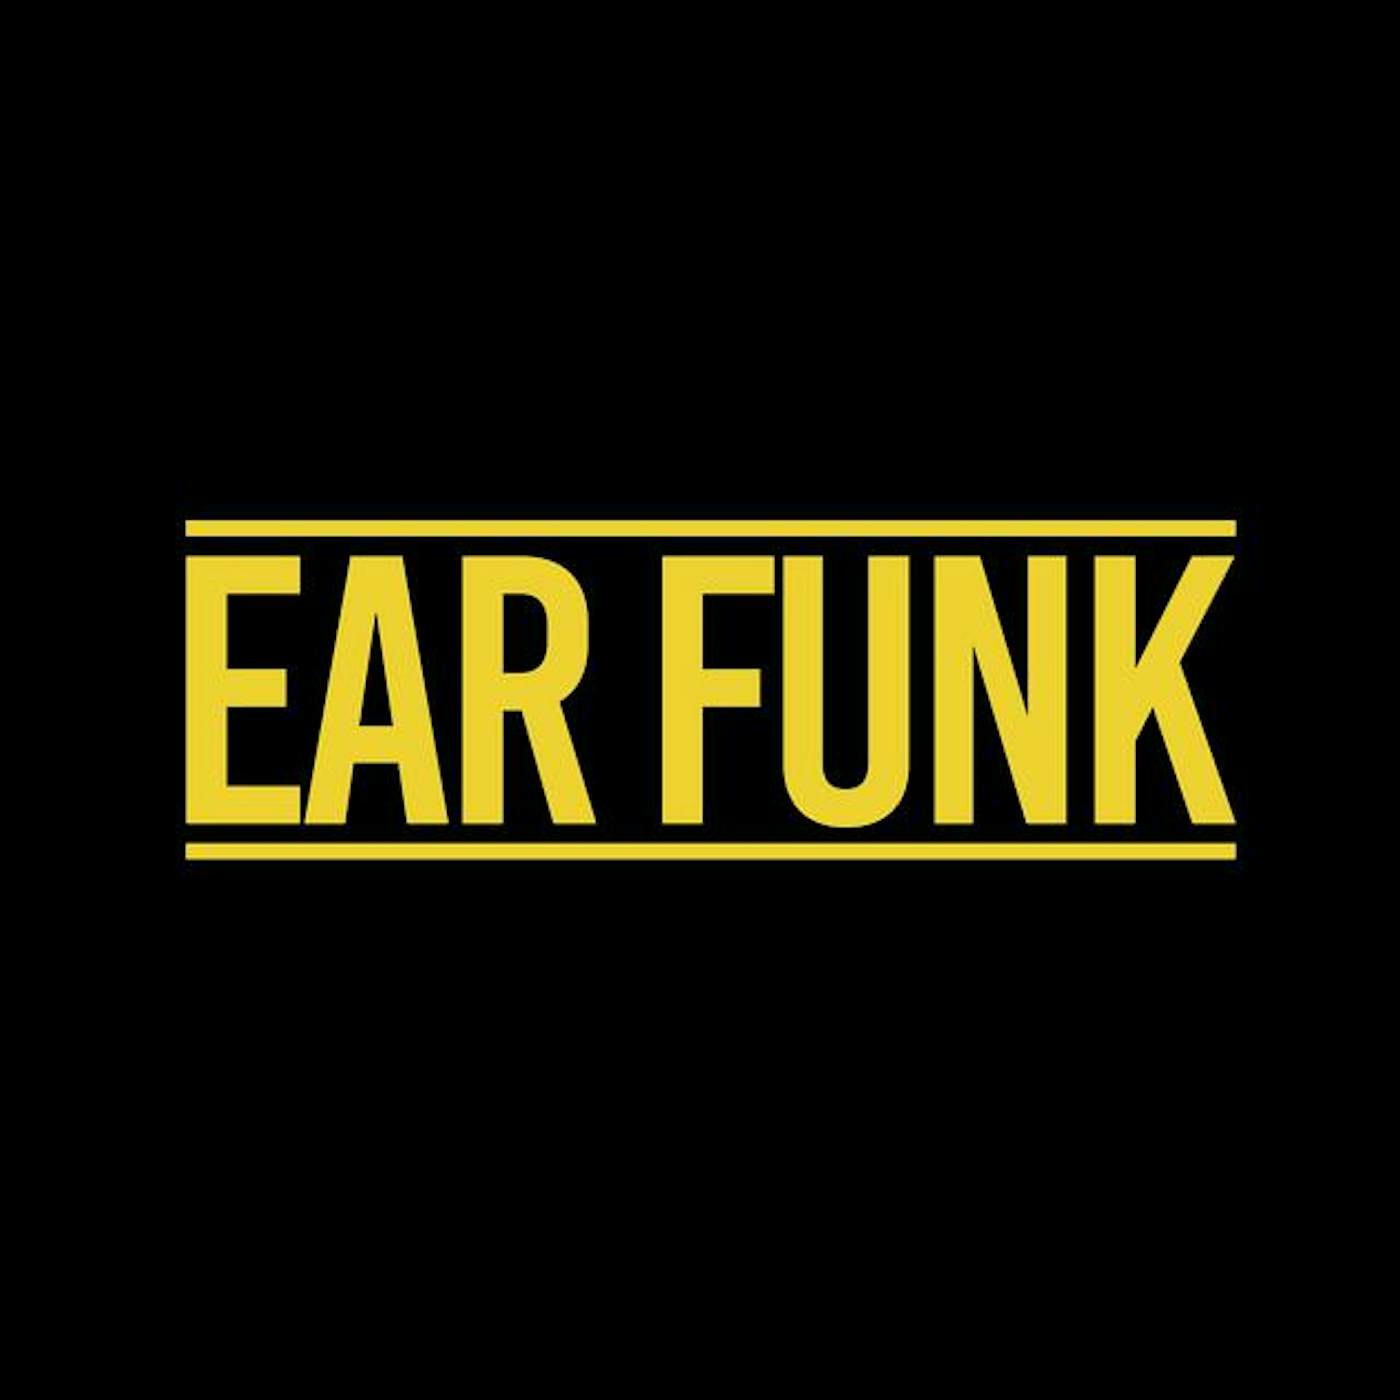 Ear Funk